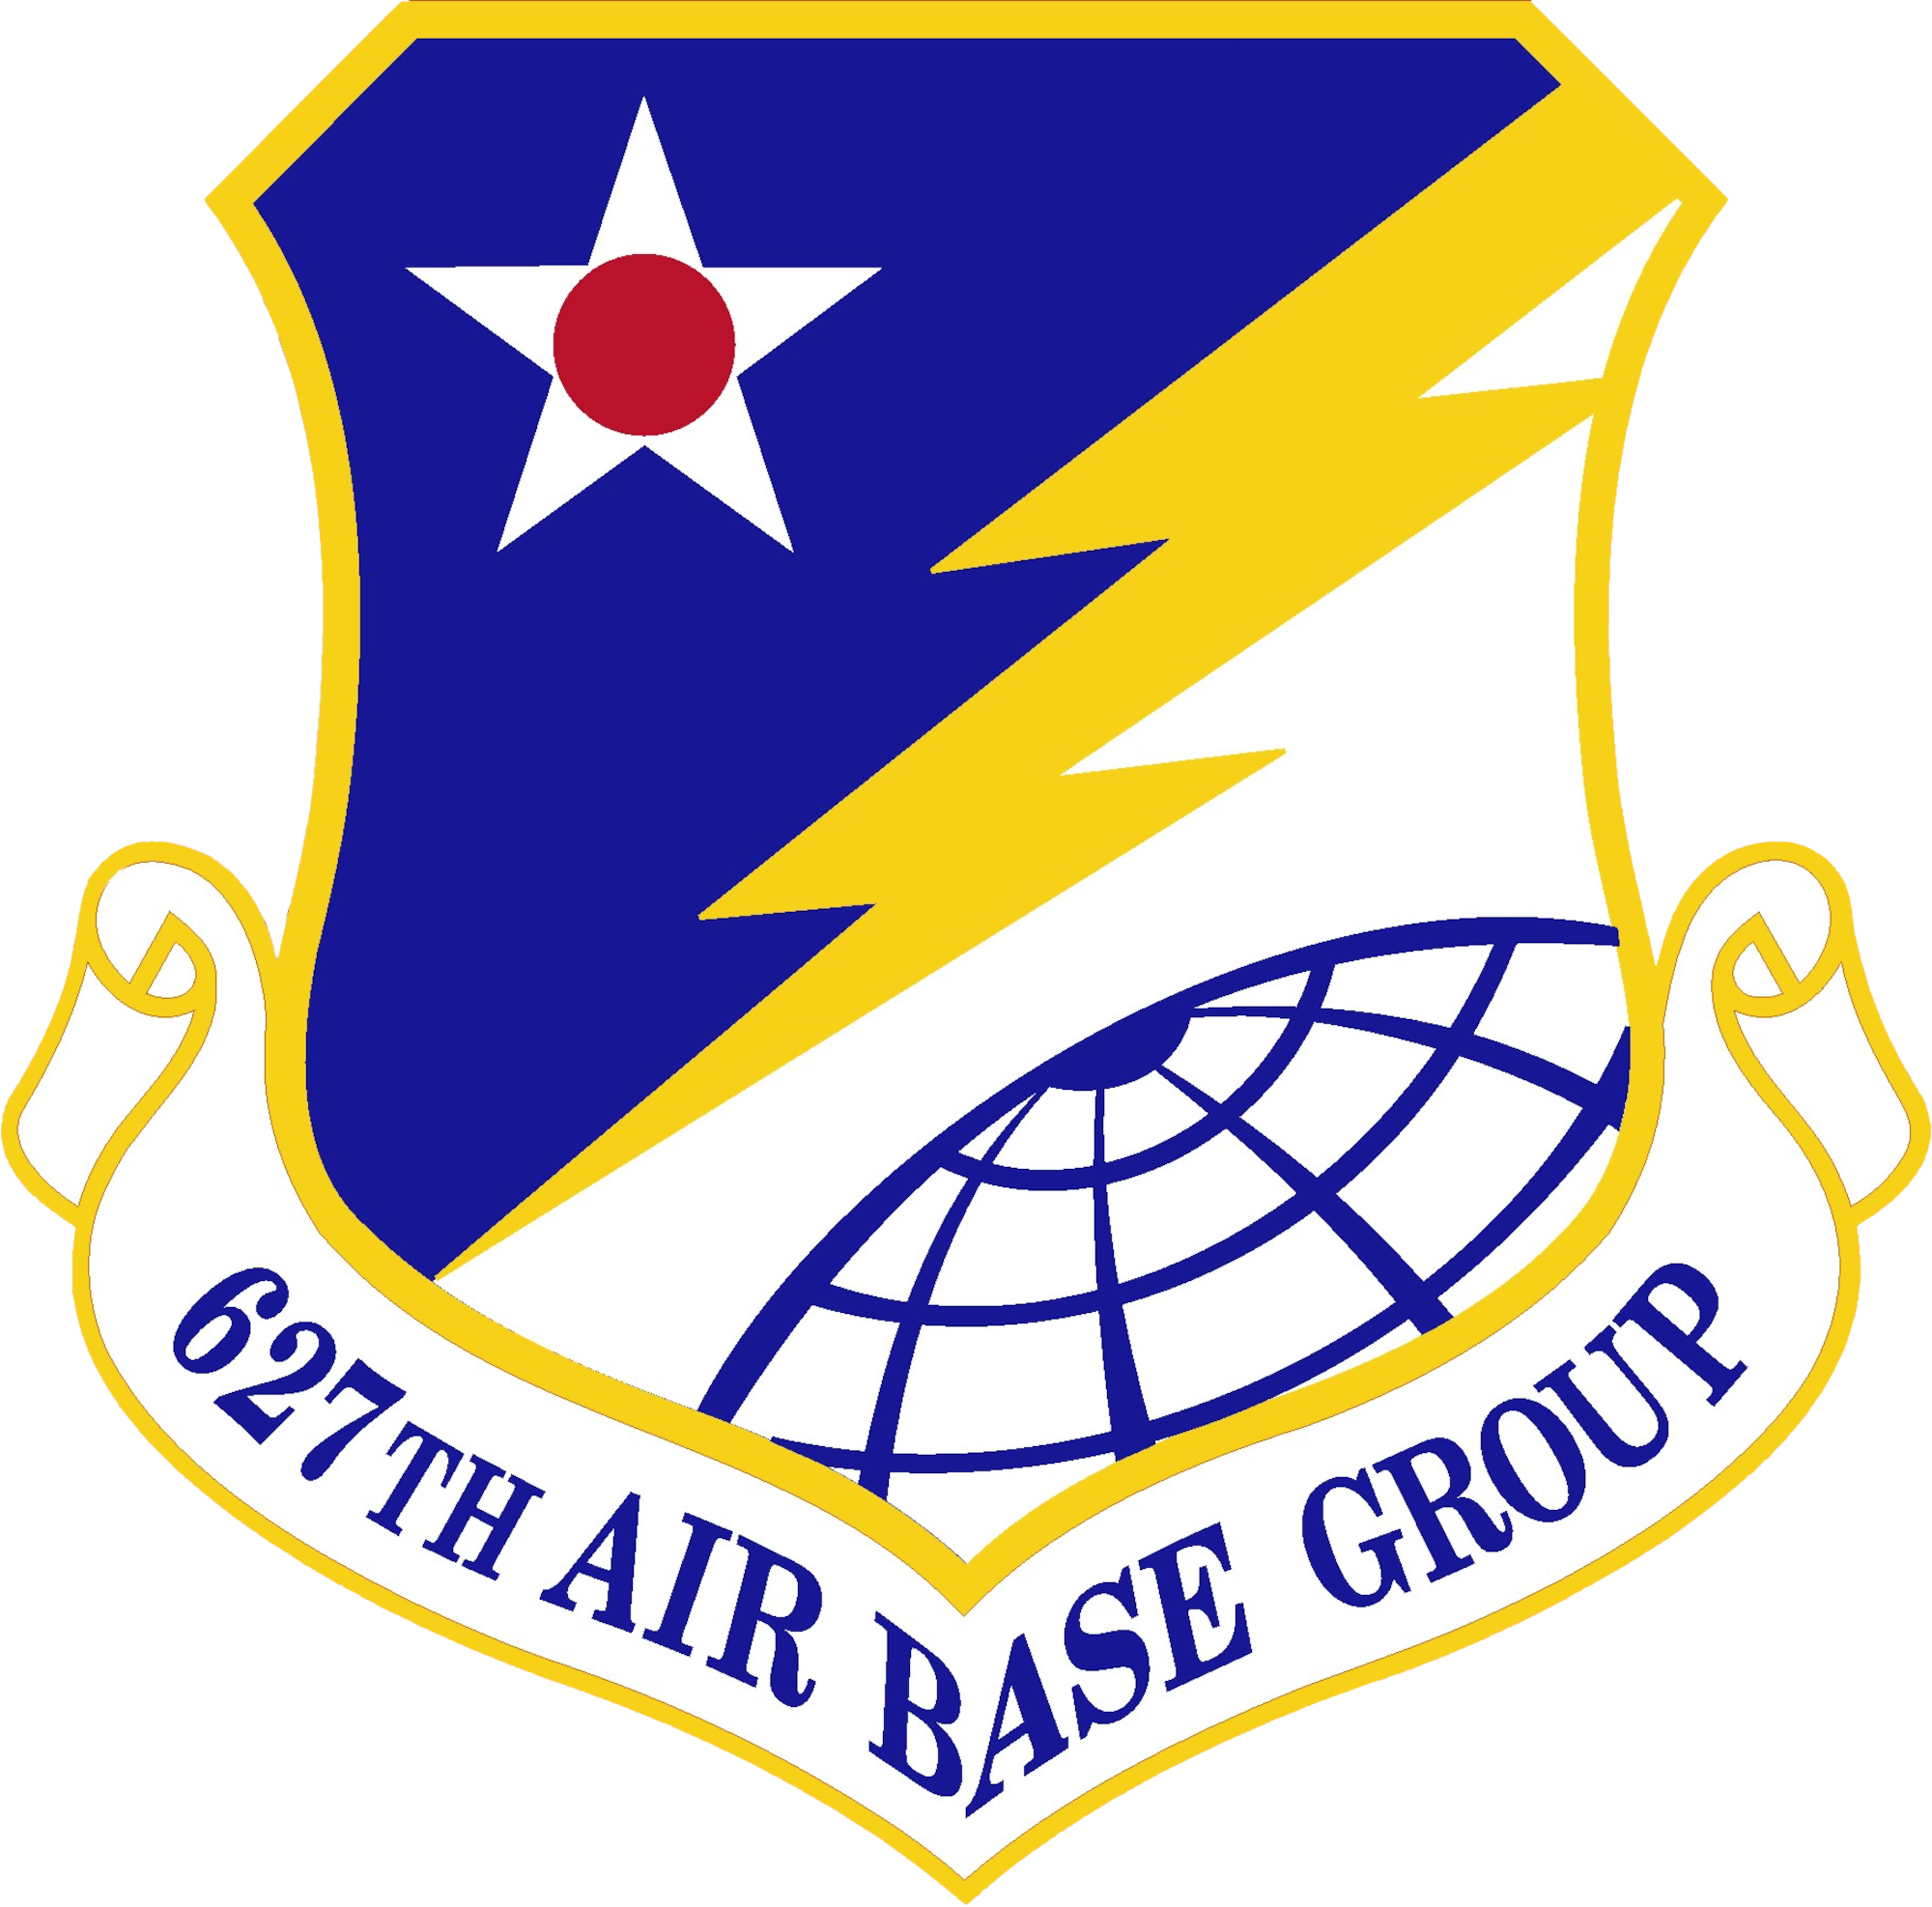 627th Air Base Group